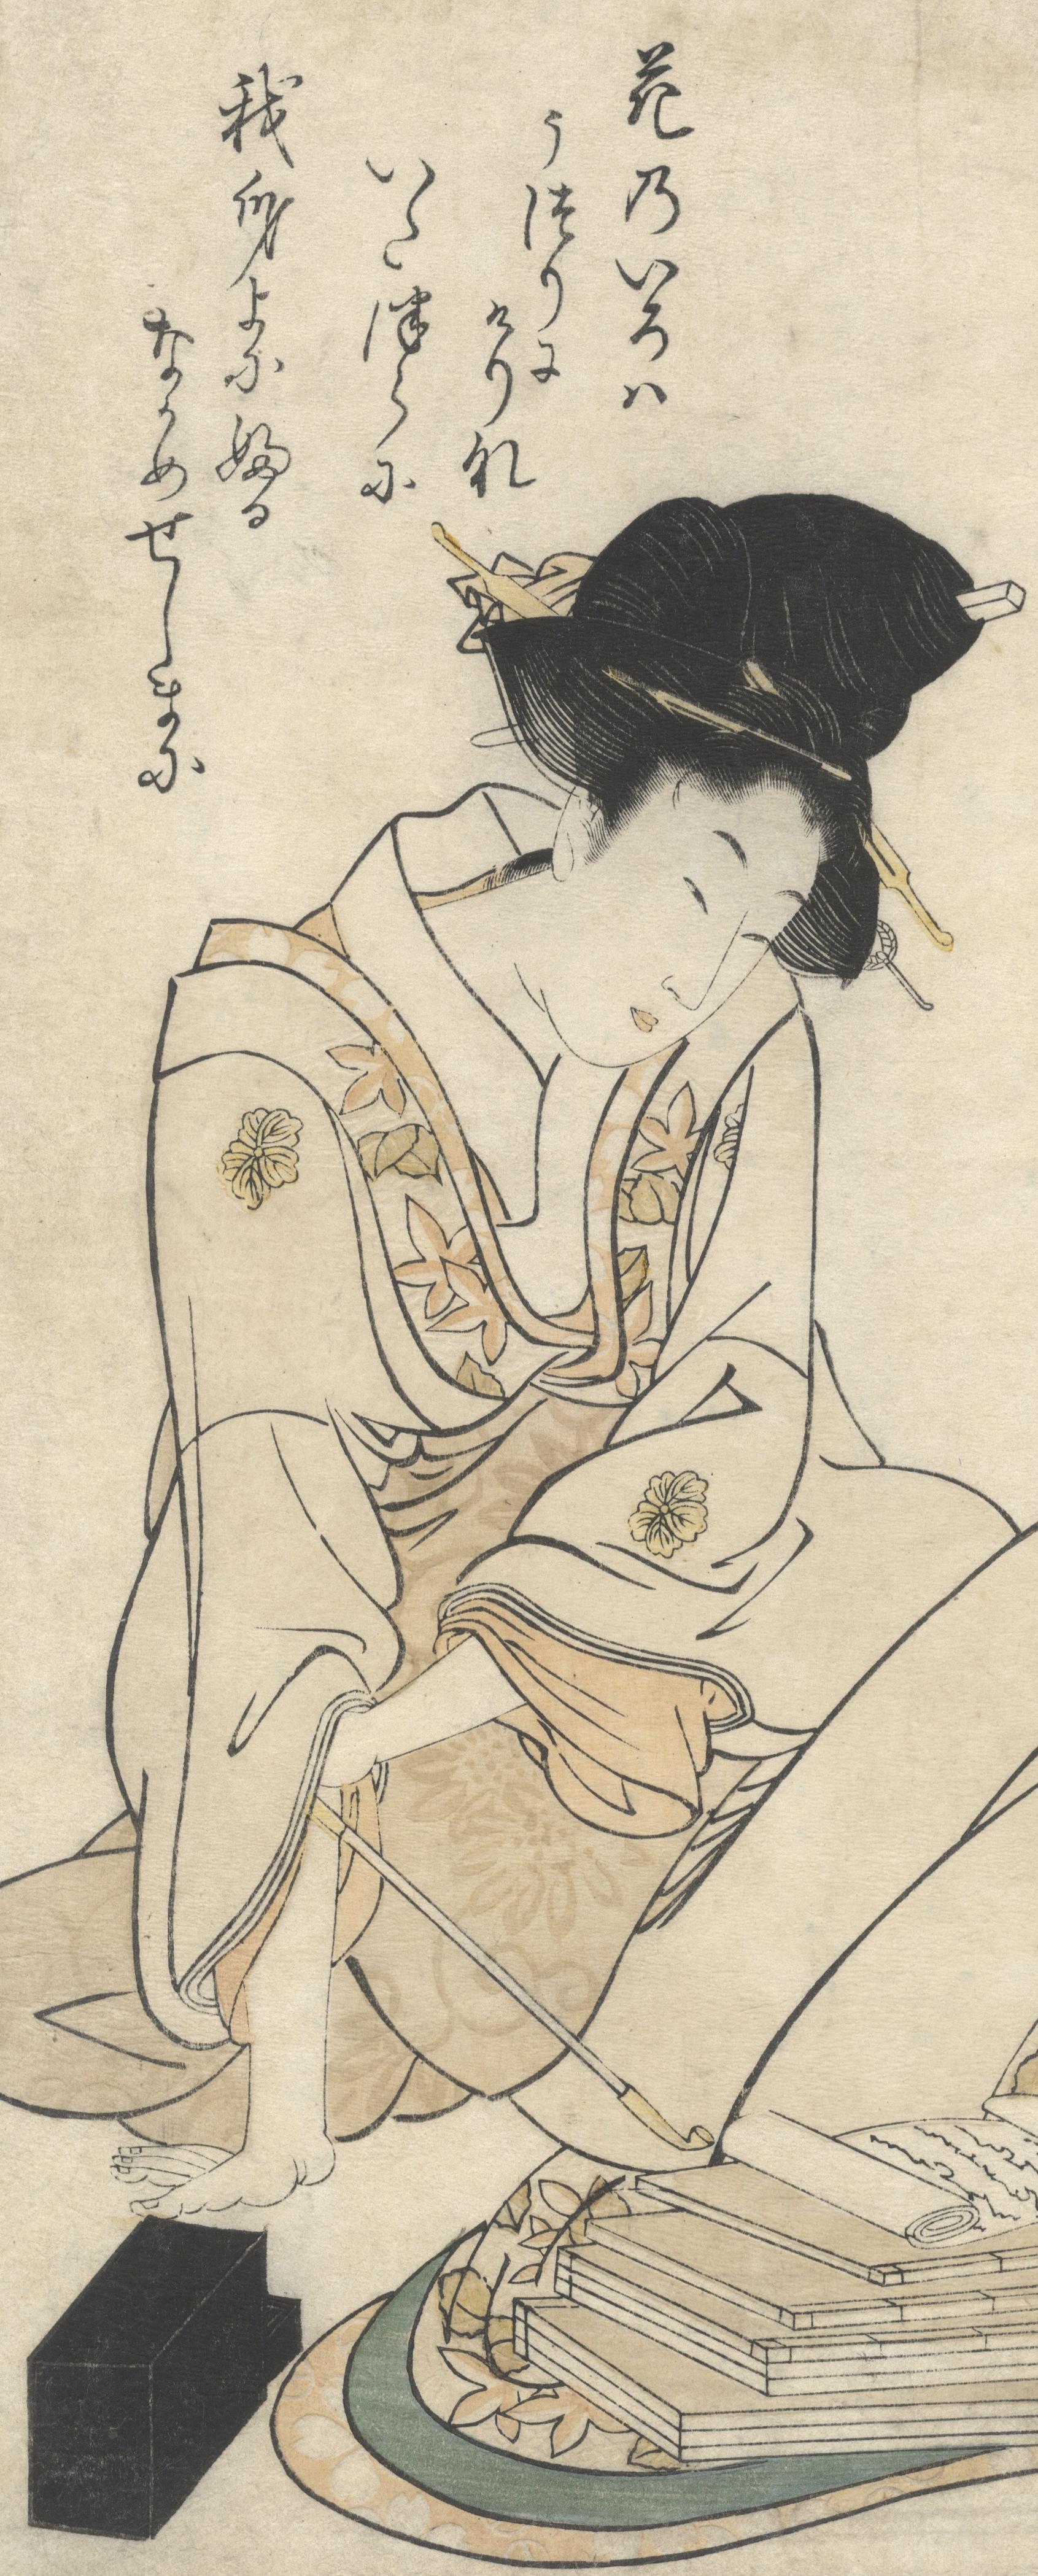 1800s japanese art